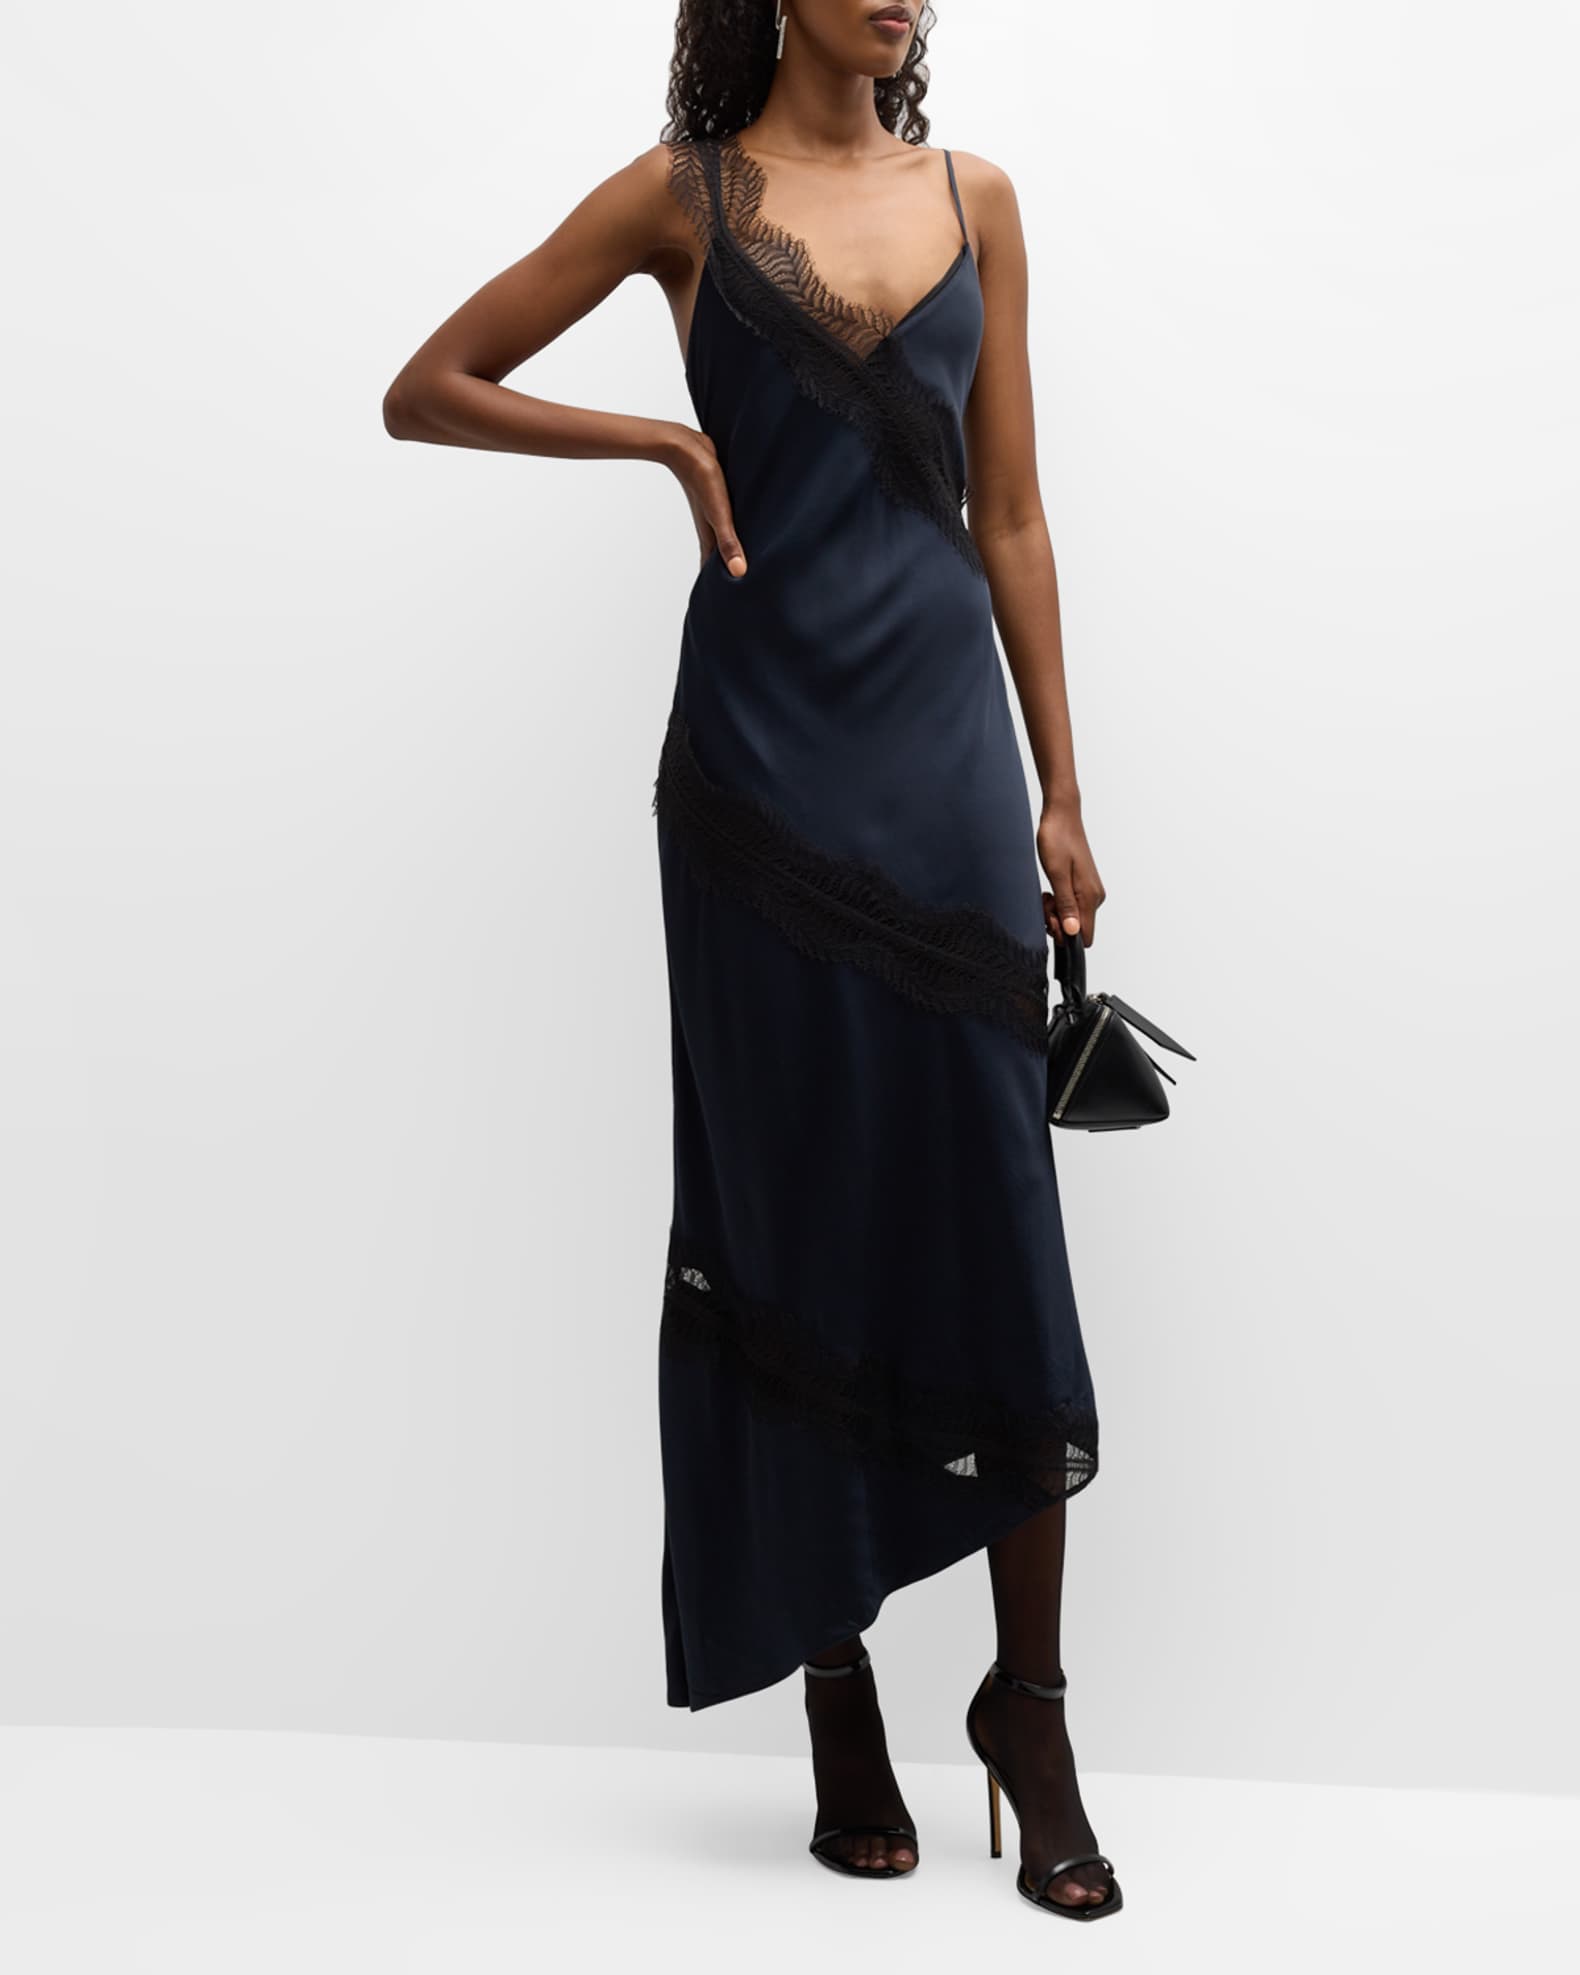 A.L.C. Soleil Satin Lace Asymmetric Maxi Dress | Neiman Marcus